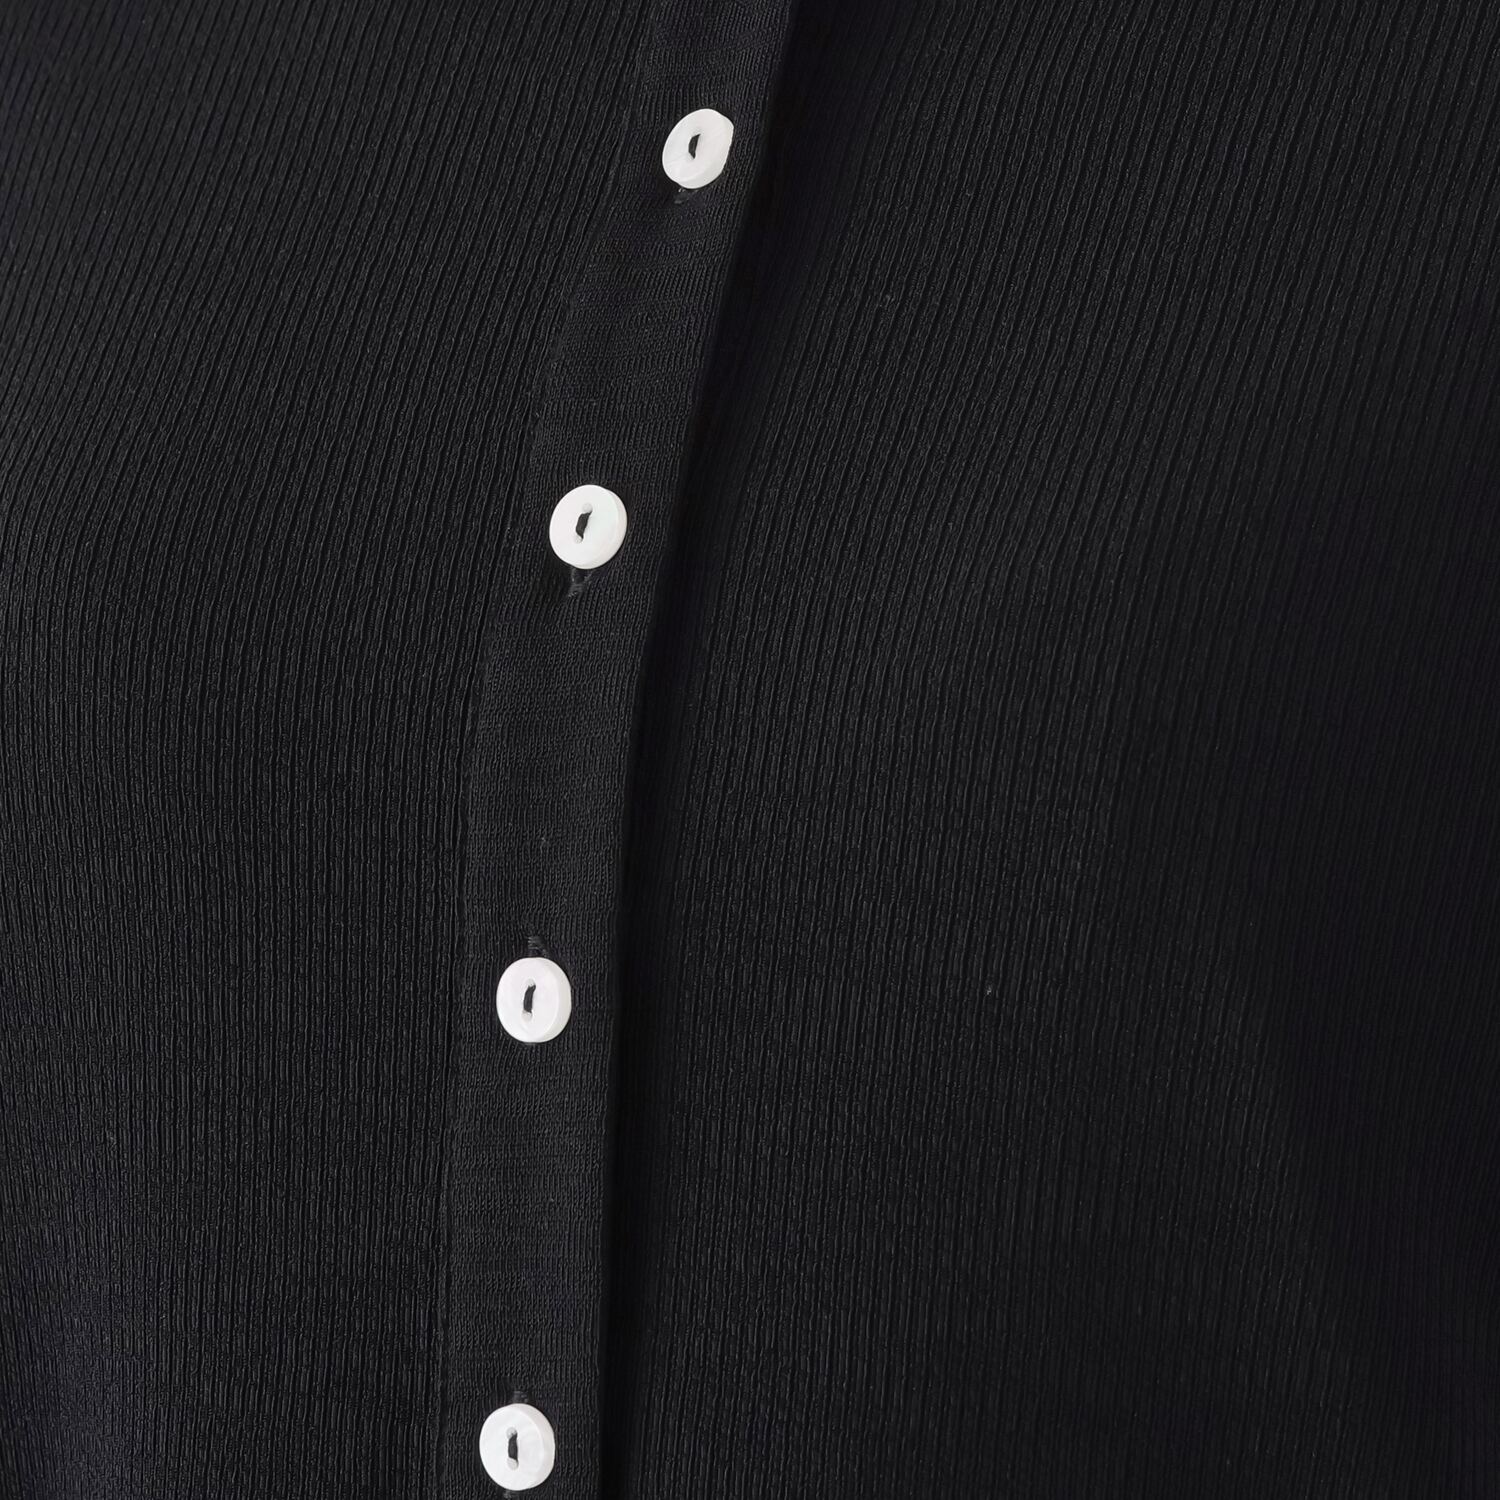 シルバーミントシュガー スタイリング自在な 繊細テレコカーディガンと すっきりな印象の 五分袖プルオーバーの ２枚セット